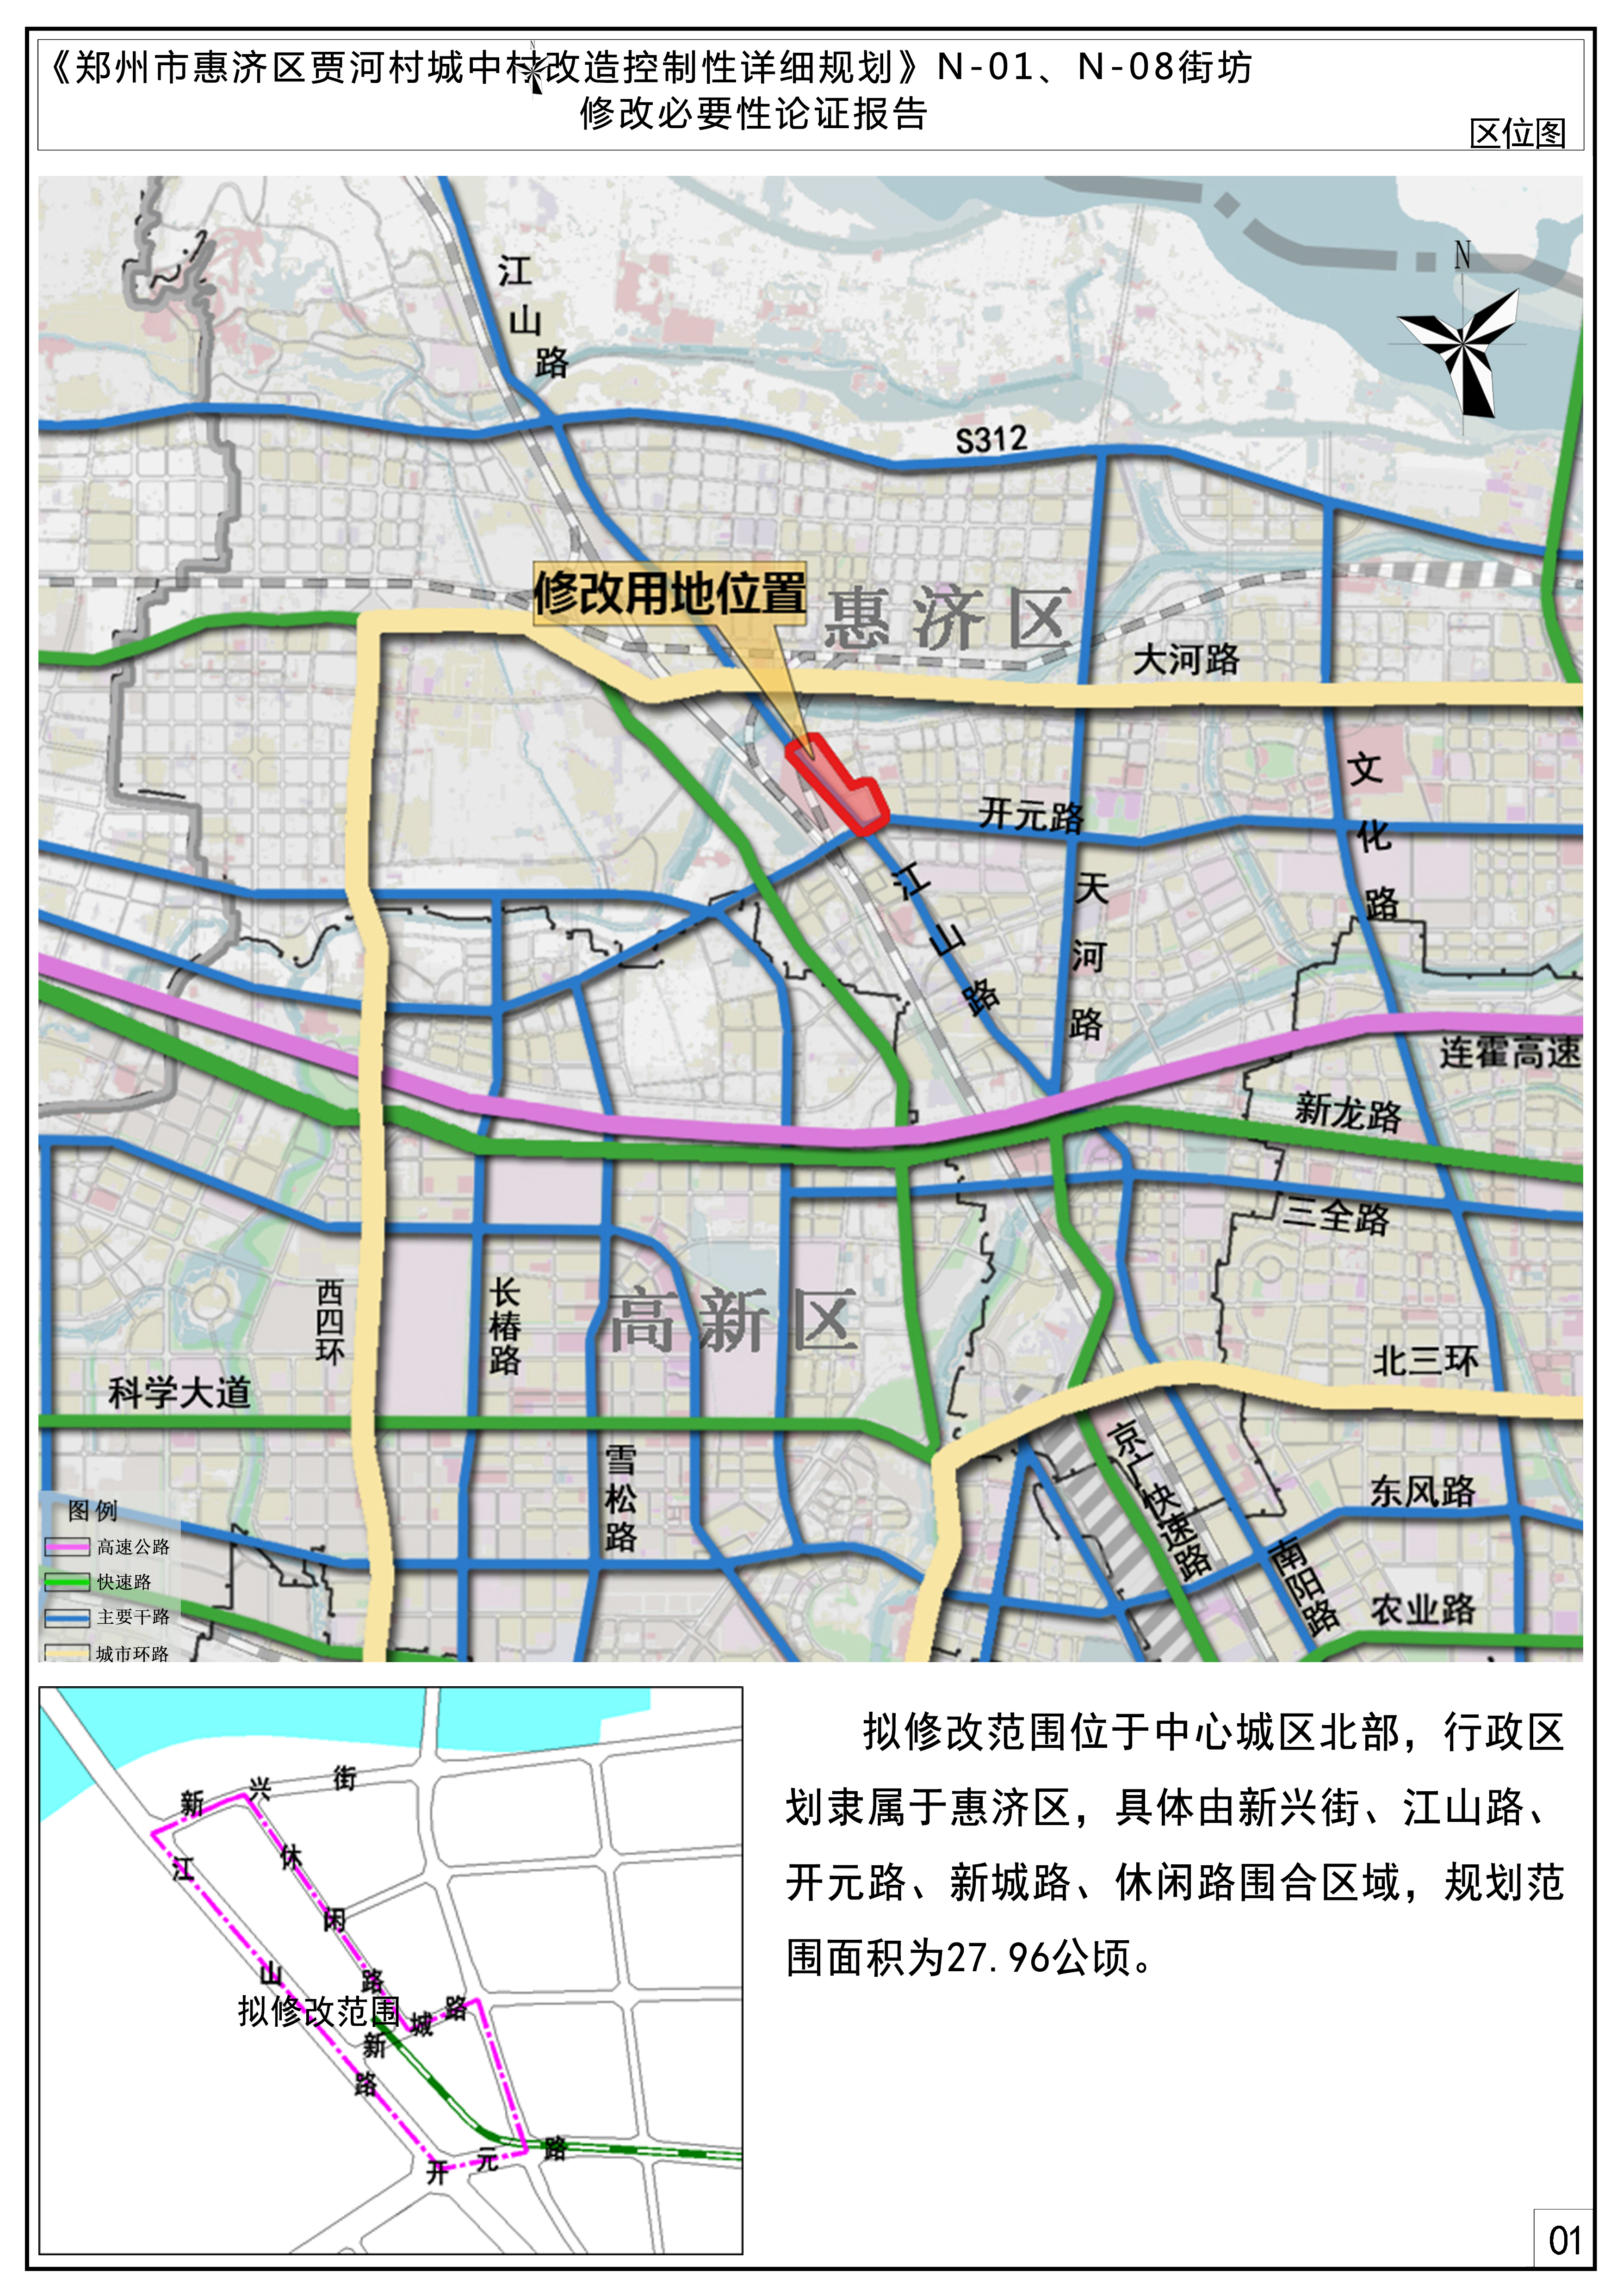 《郑州市惠济区贾河村城中村改造控制性详细规划》N-01、N-08街坊修改论证报告